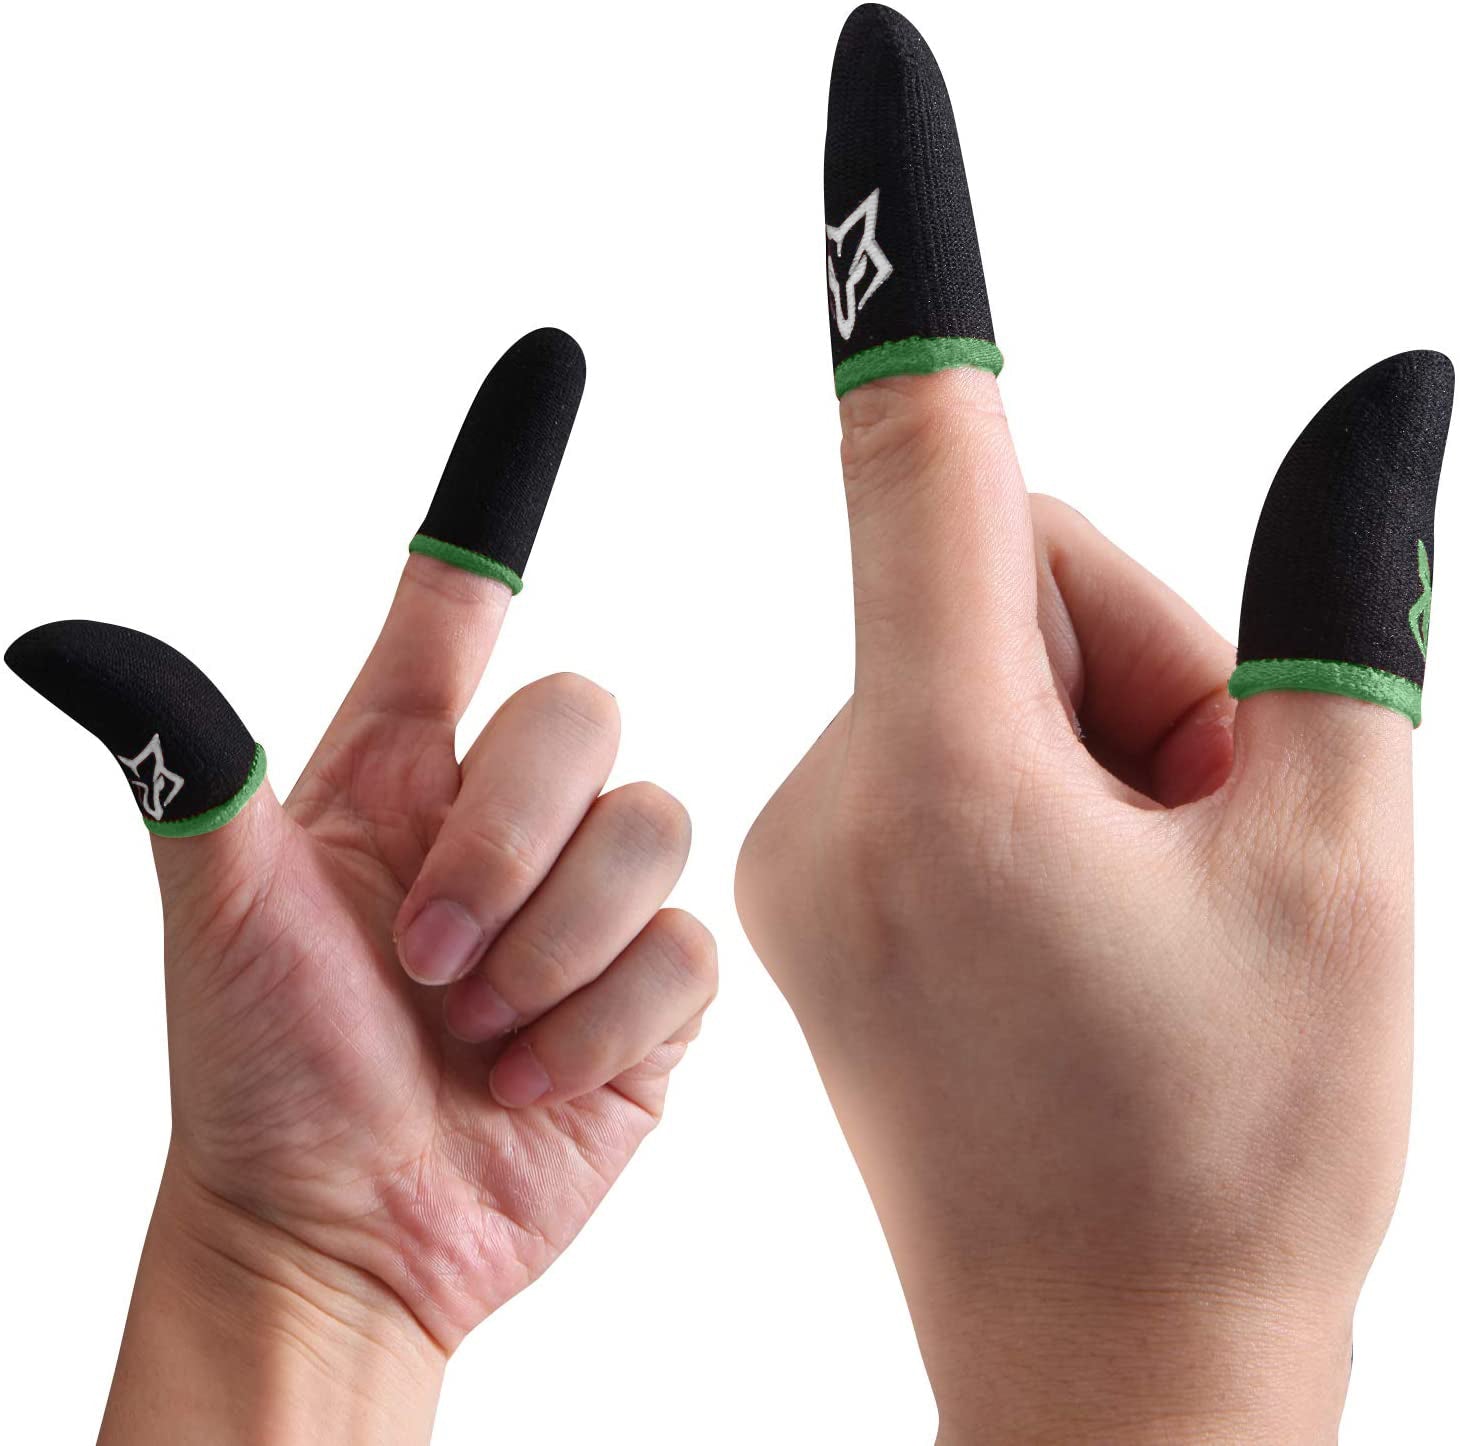 Sarafox V1 Mobile Gaming Finger Sleeves